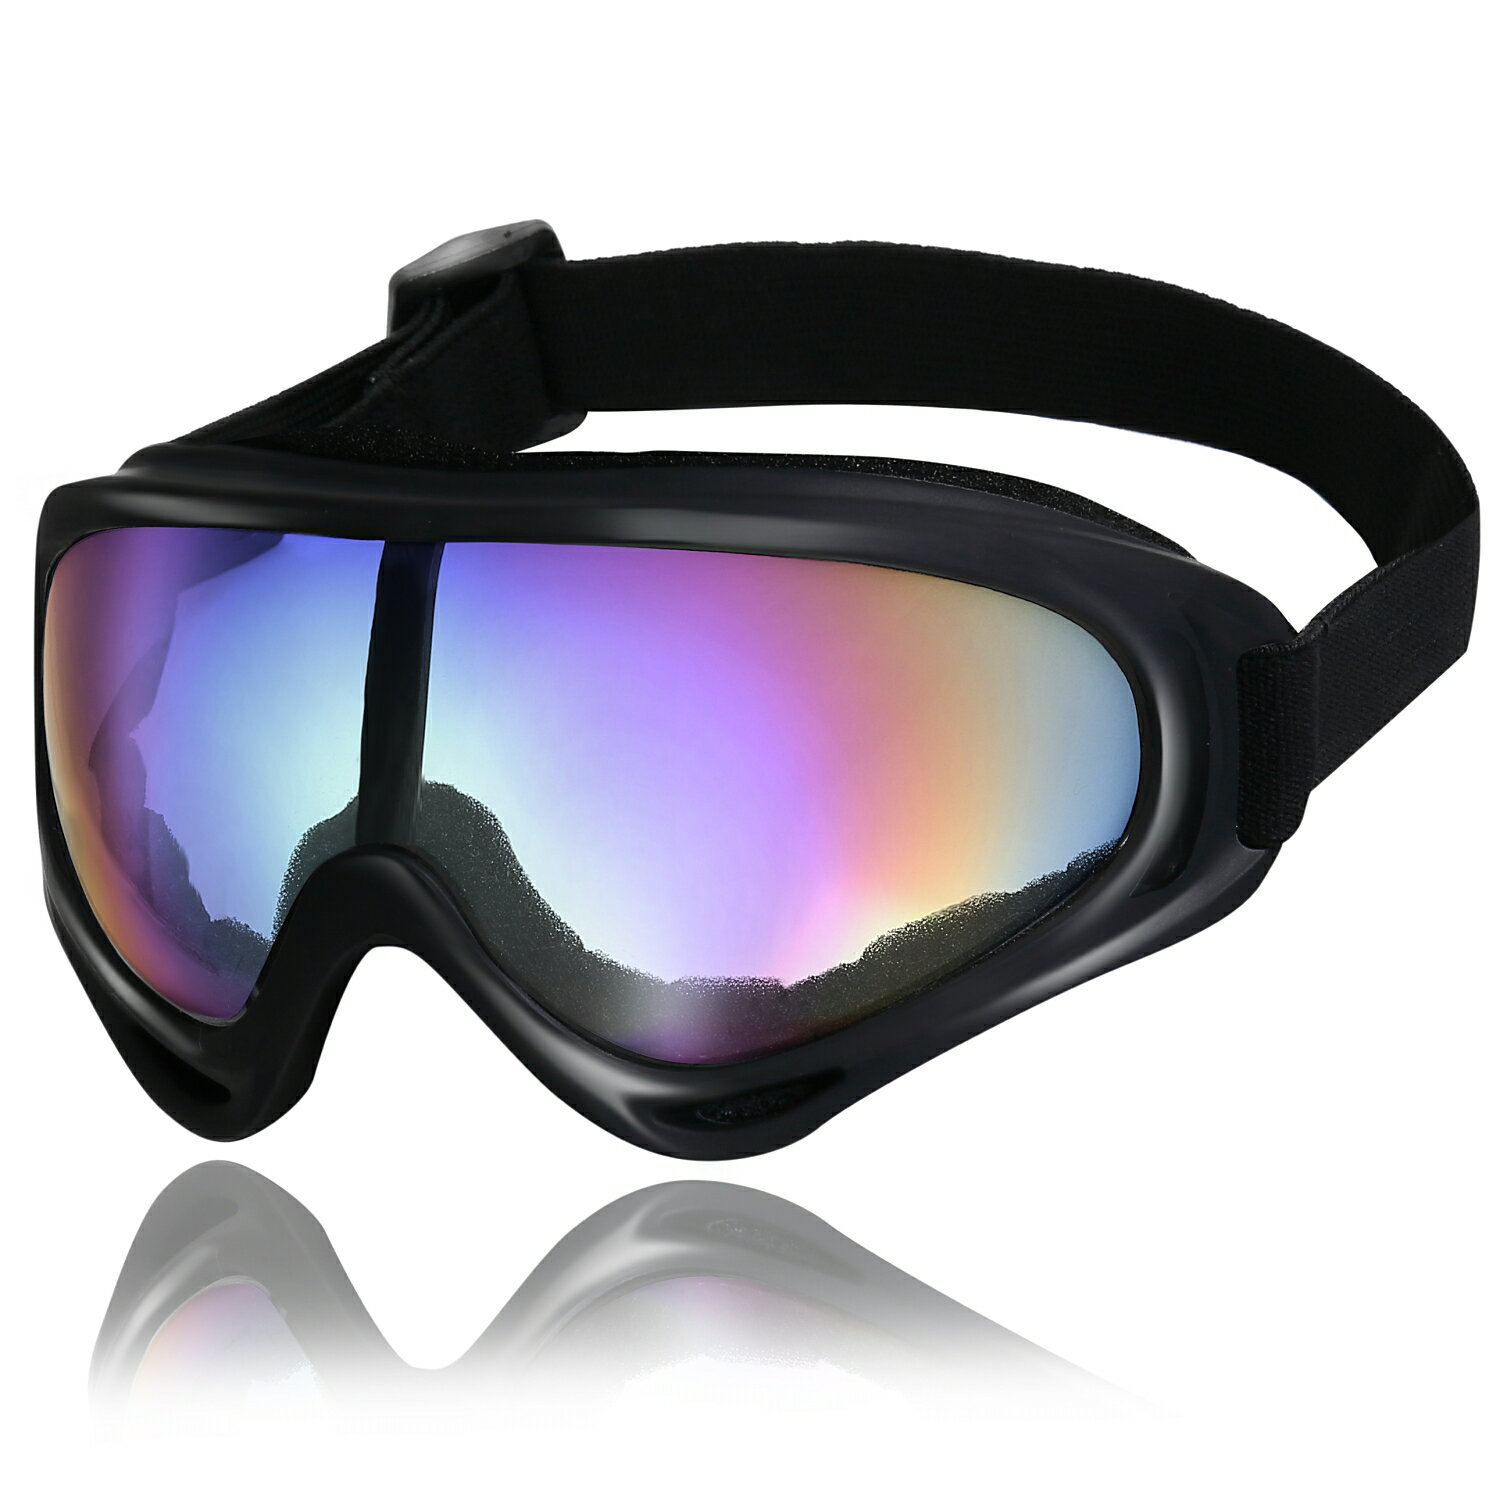 メガネ対応ゴーグル 眼鏡の上から装着できる 防曇仕様のサバゲーゴーグルのおすすめランキング 野に行く